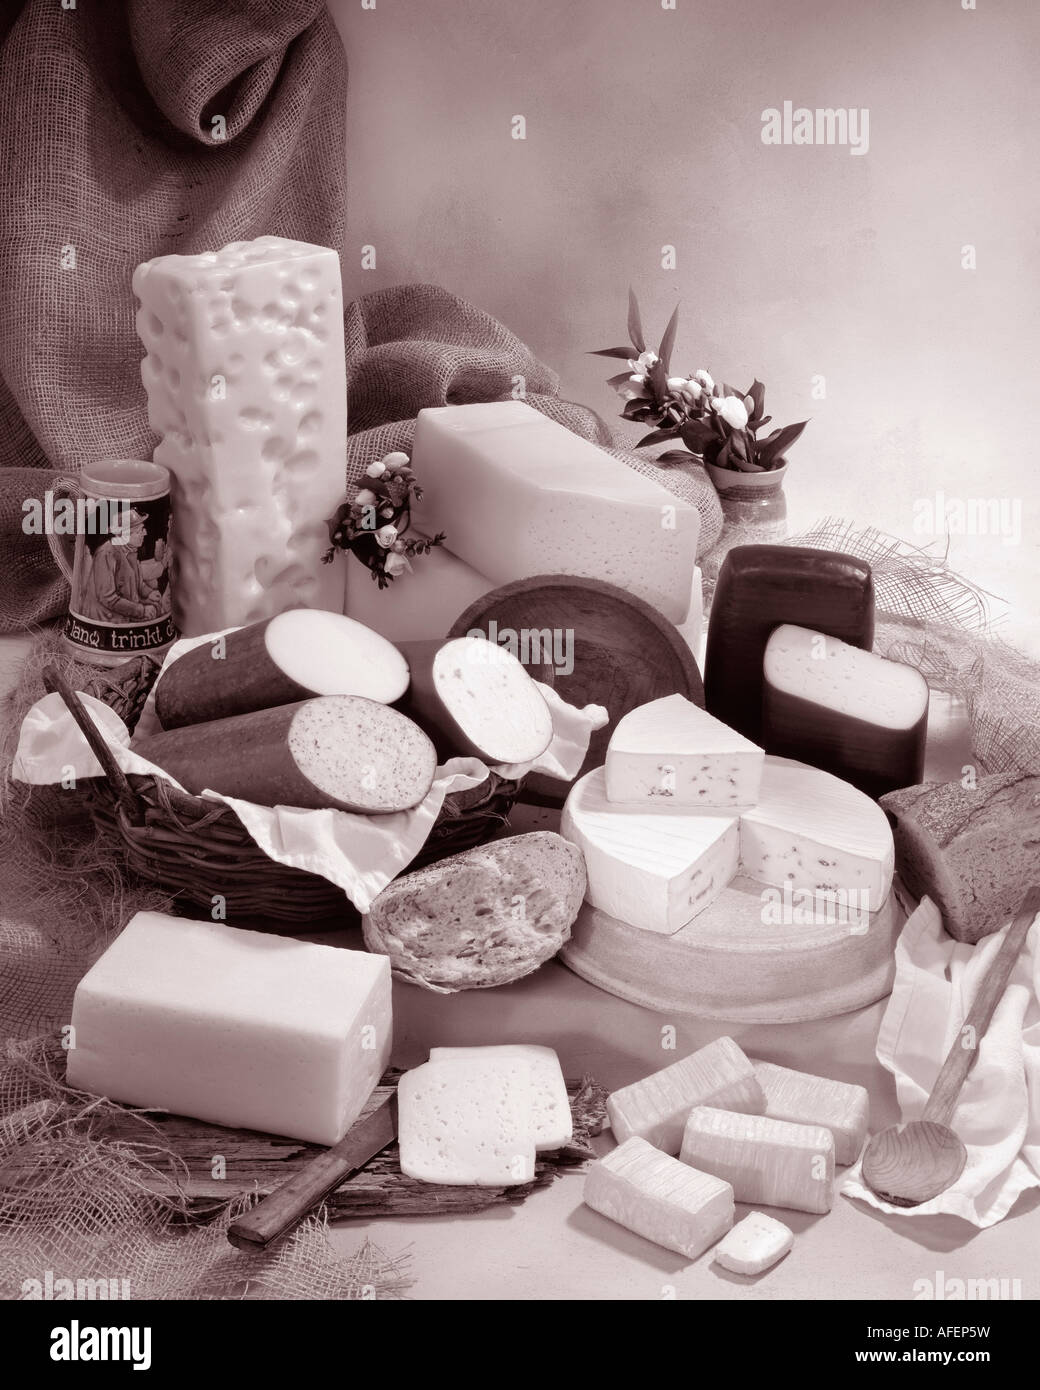 Deutschen Käse in Sepia von Gruppenfoto auf Warm getönten gesprenkelte Hintergrund. Hochformat, Studio Tischplatte. Klassisches Bild. Stockfoto